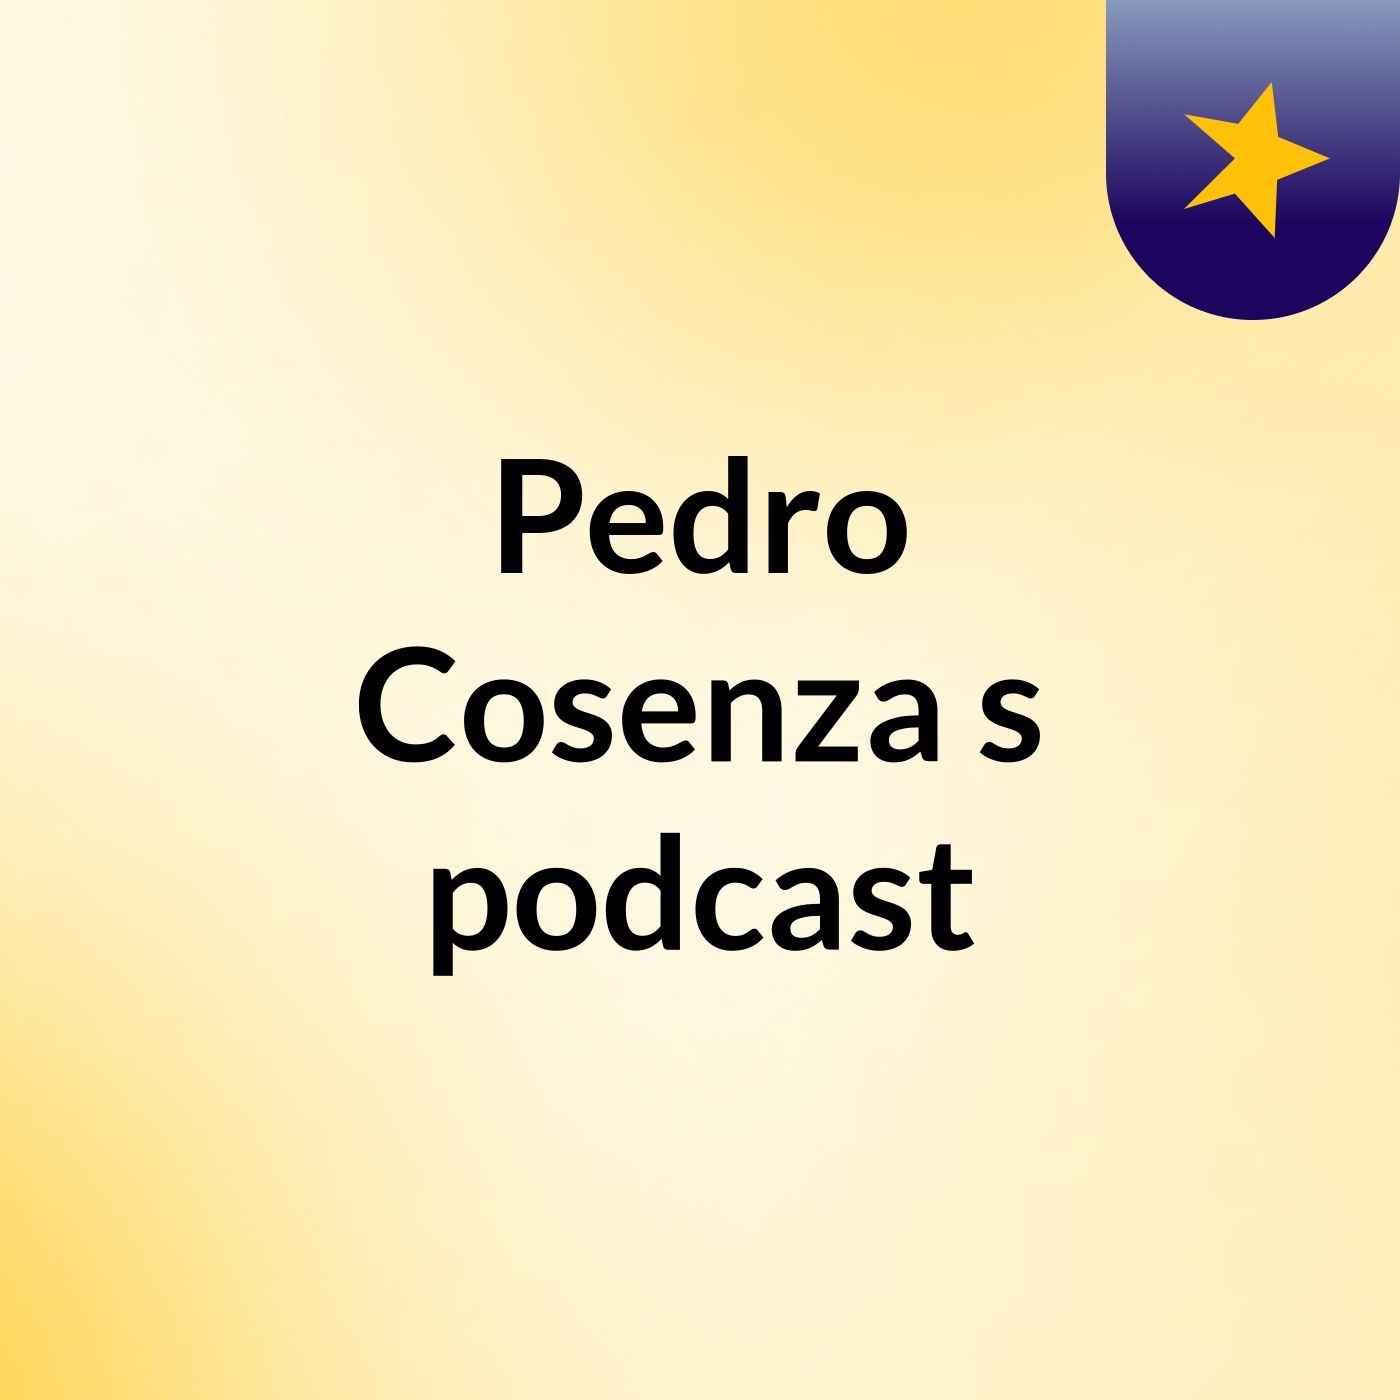 Pedro Cosenza's podcast